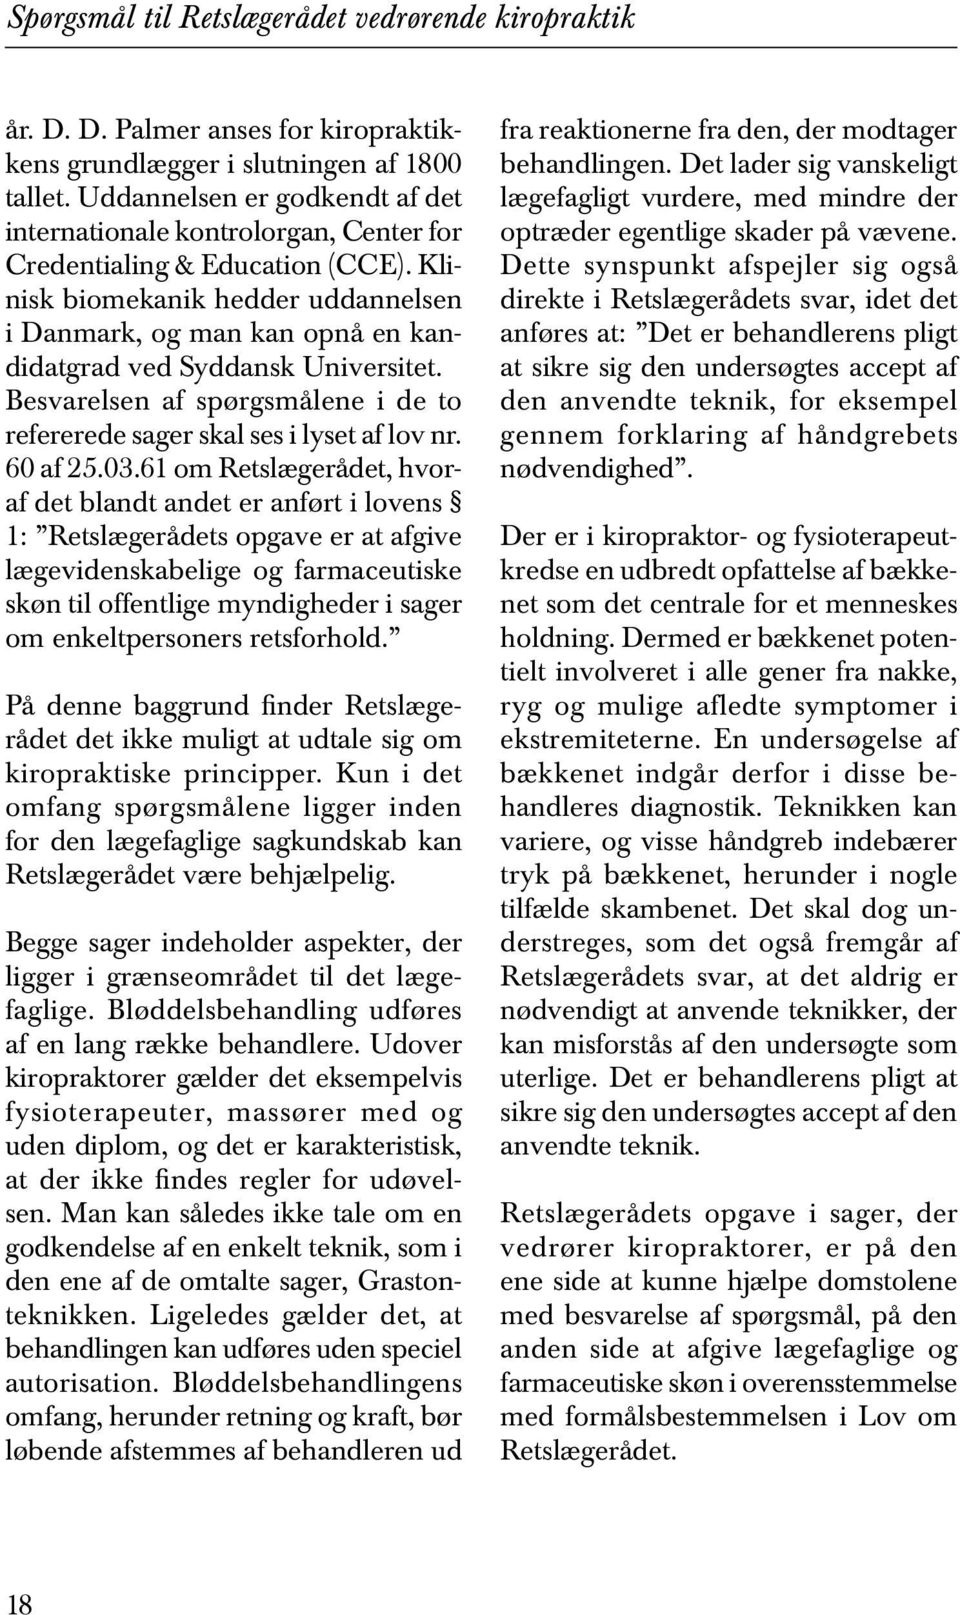 Klinisk biomekanik hedder uddannelsen i Danmark, og man kan opnå en kandidatgrad ved Syddansk Universitet. Besvarelsen af spørgsmålene i de to refererede sager skal ses i lyset af lov nr. 60 af 25.03.